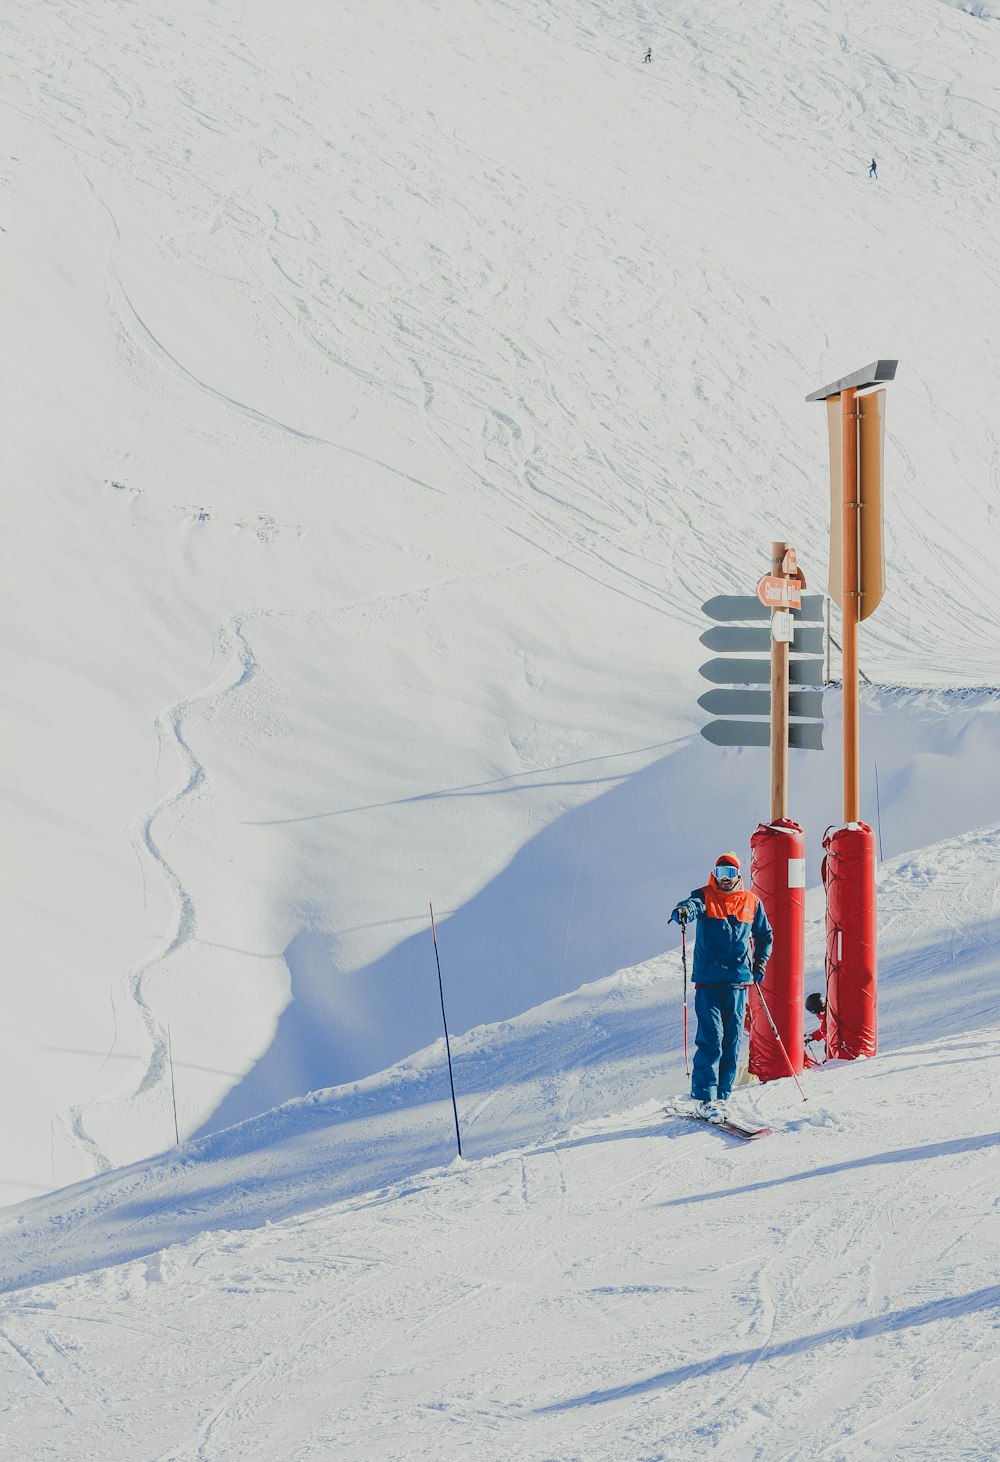 赤と茶色の支柱のそばに立つスキーストックを持つ青いジャケットの男